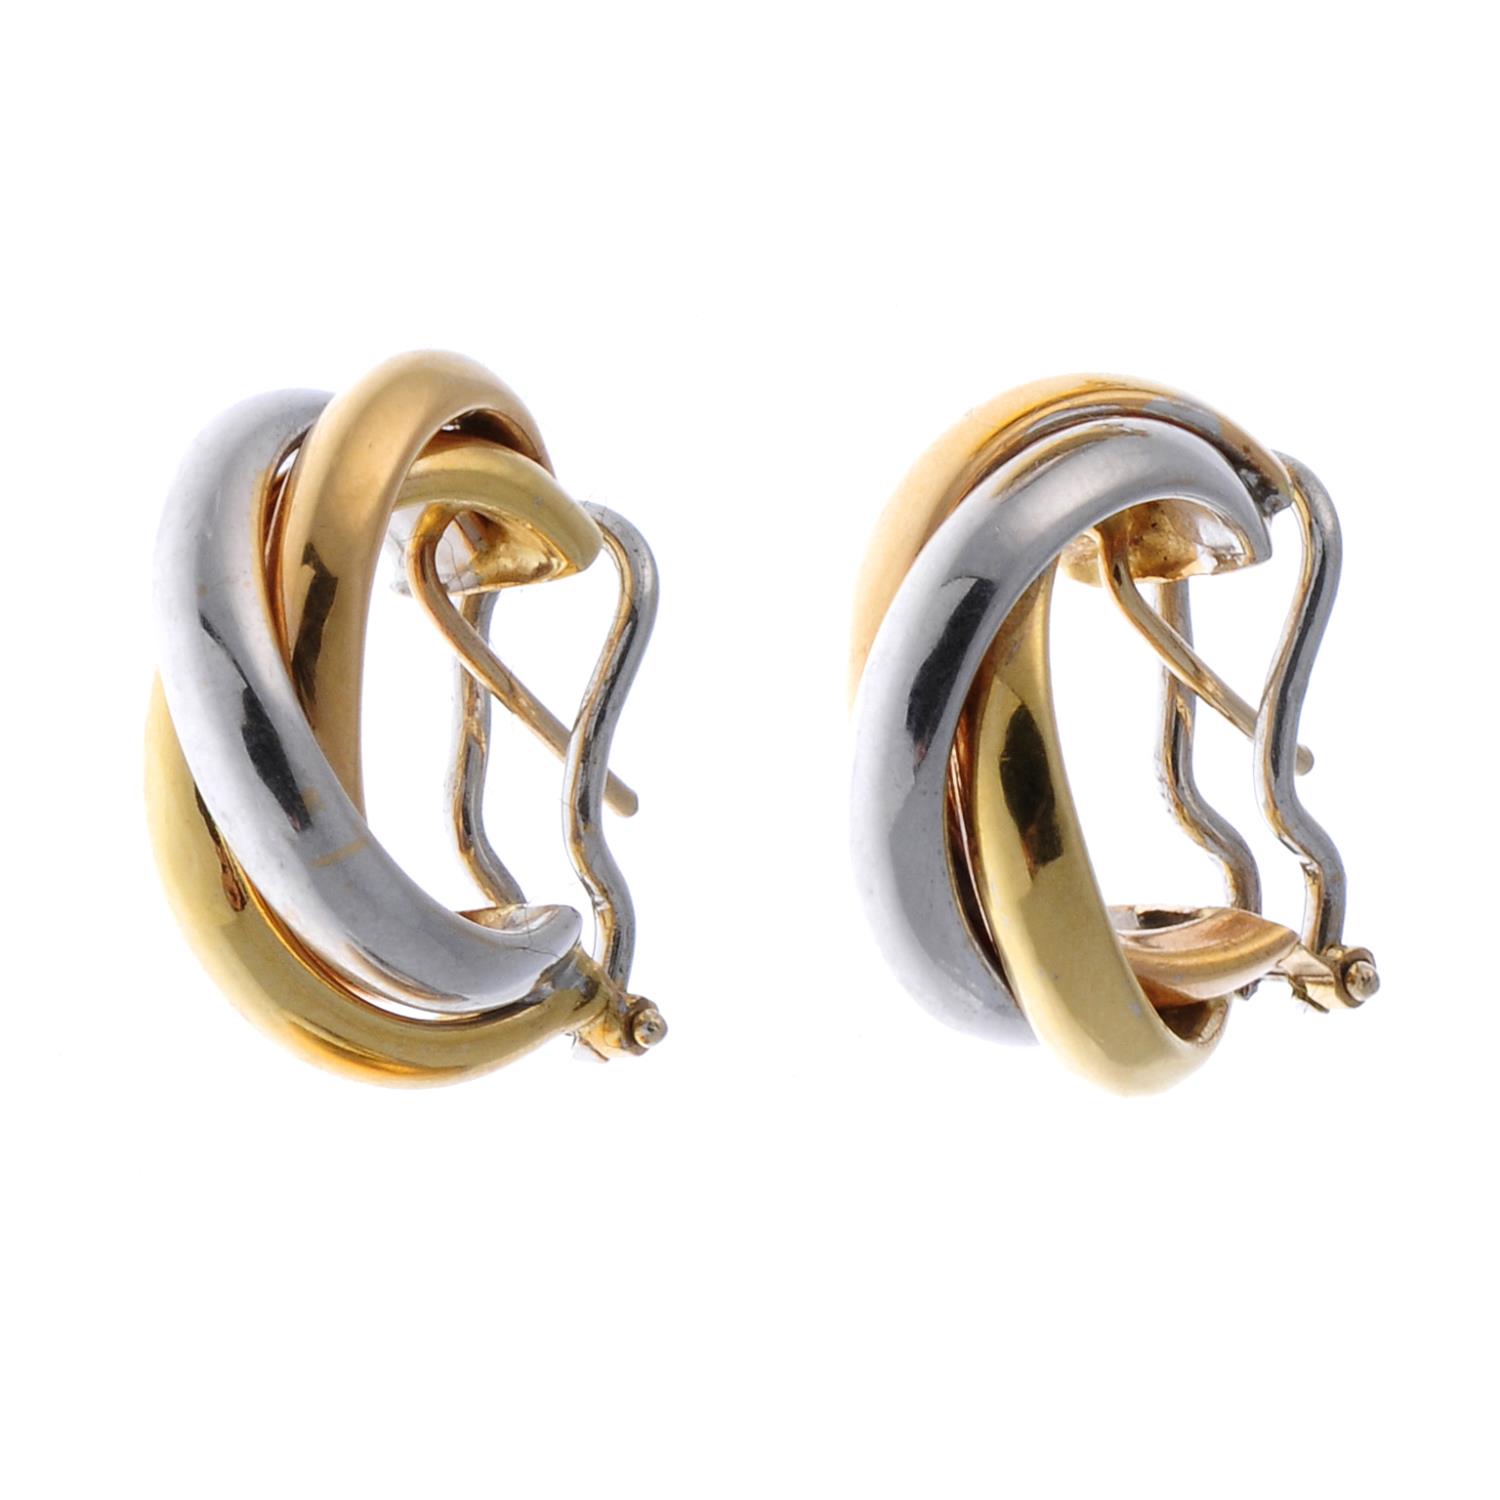 A pair of tri-colour hoop earrings.